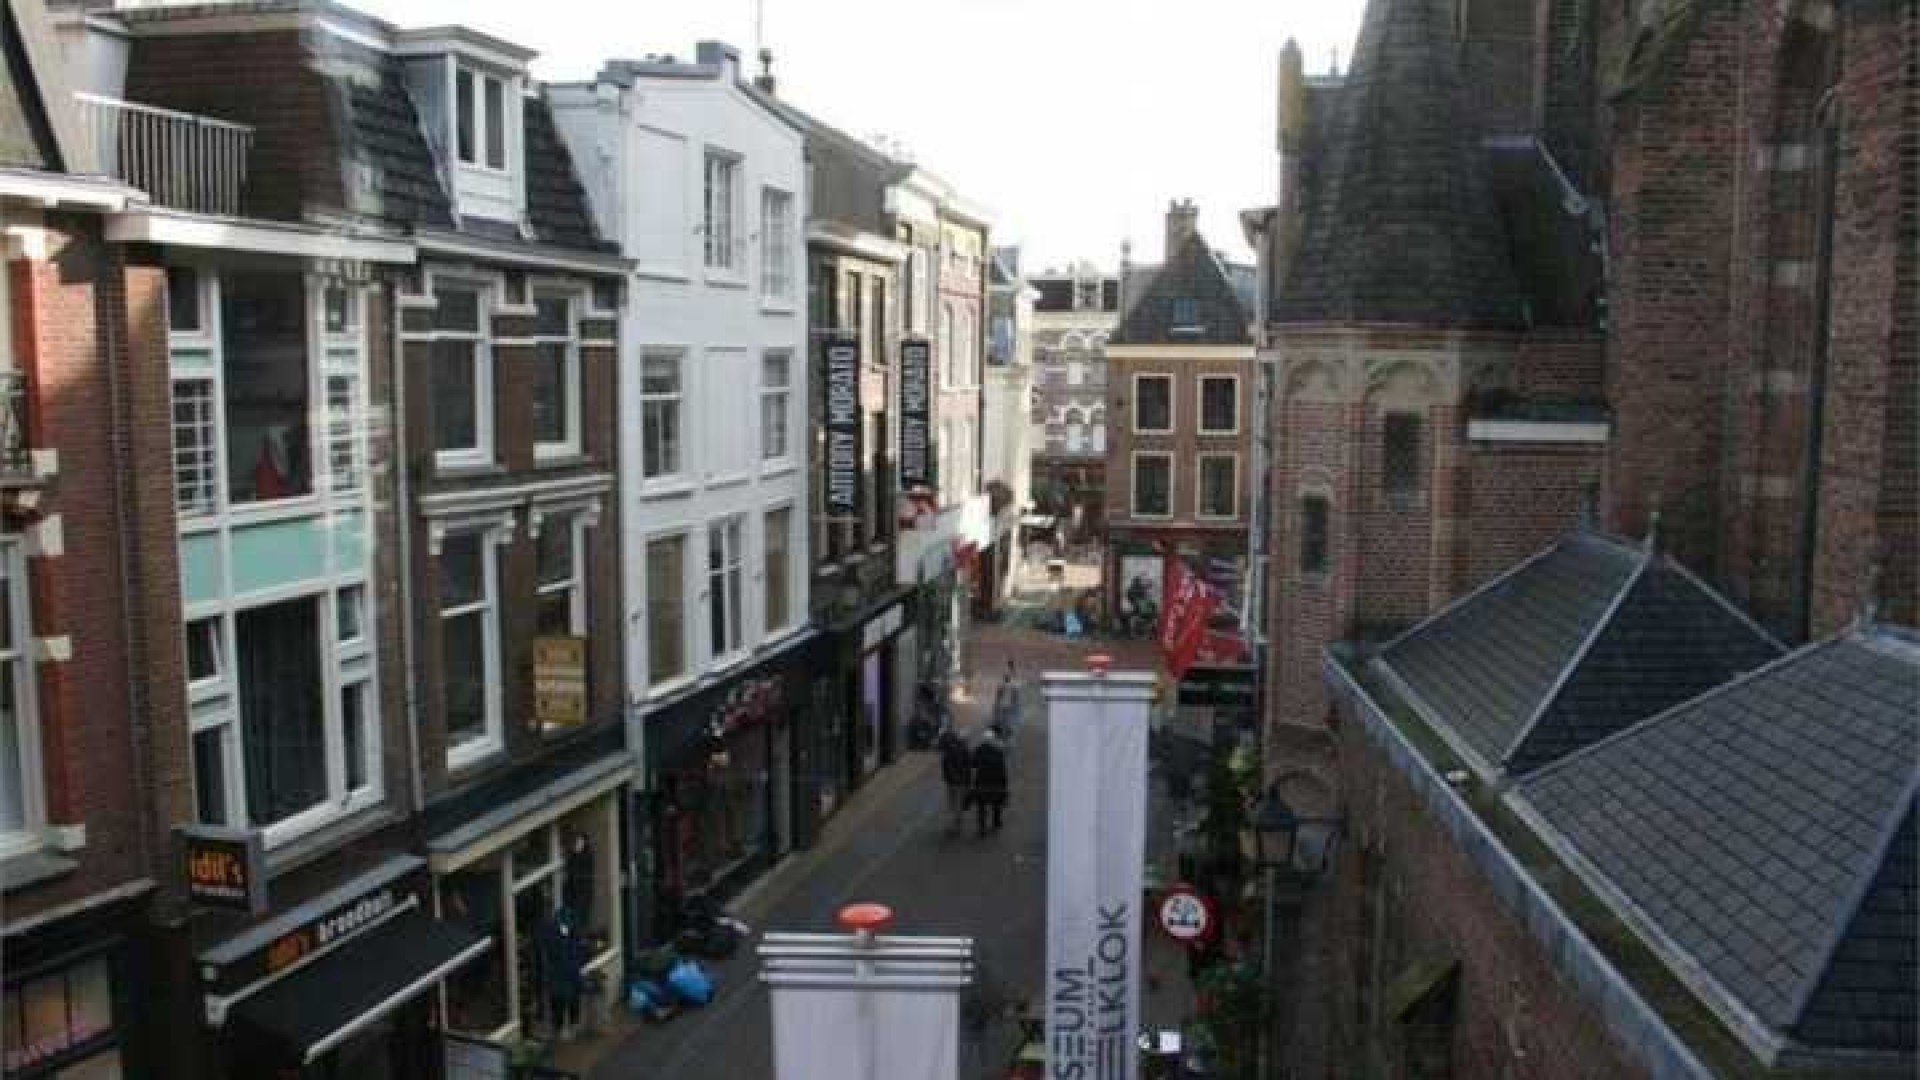 Zimra Geurts huurt appartement in centrum van Utrecht. Zie foto's